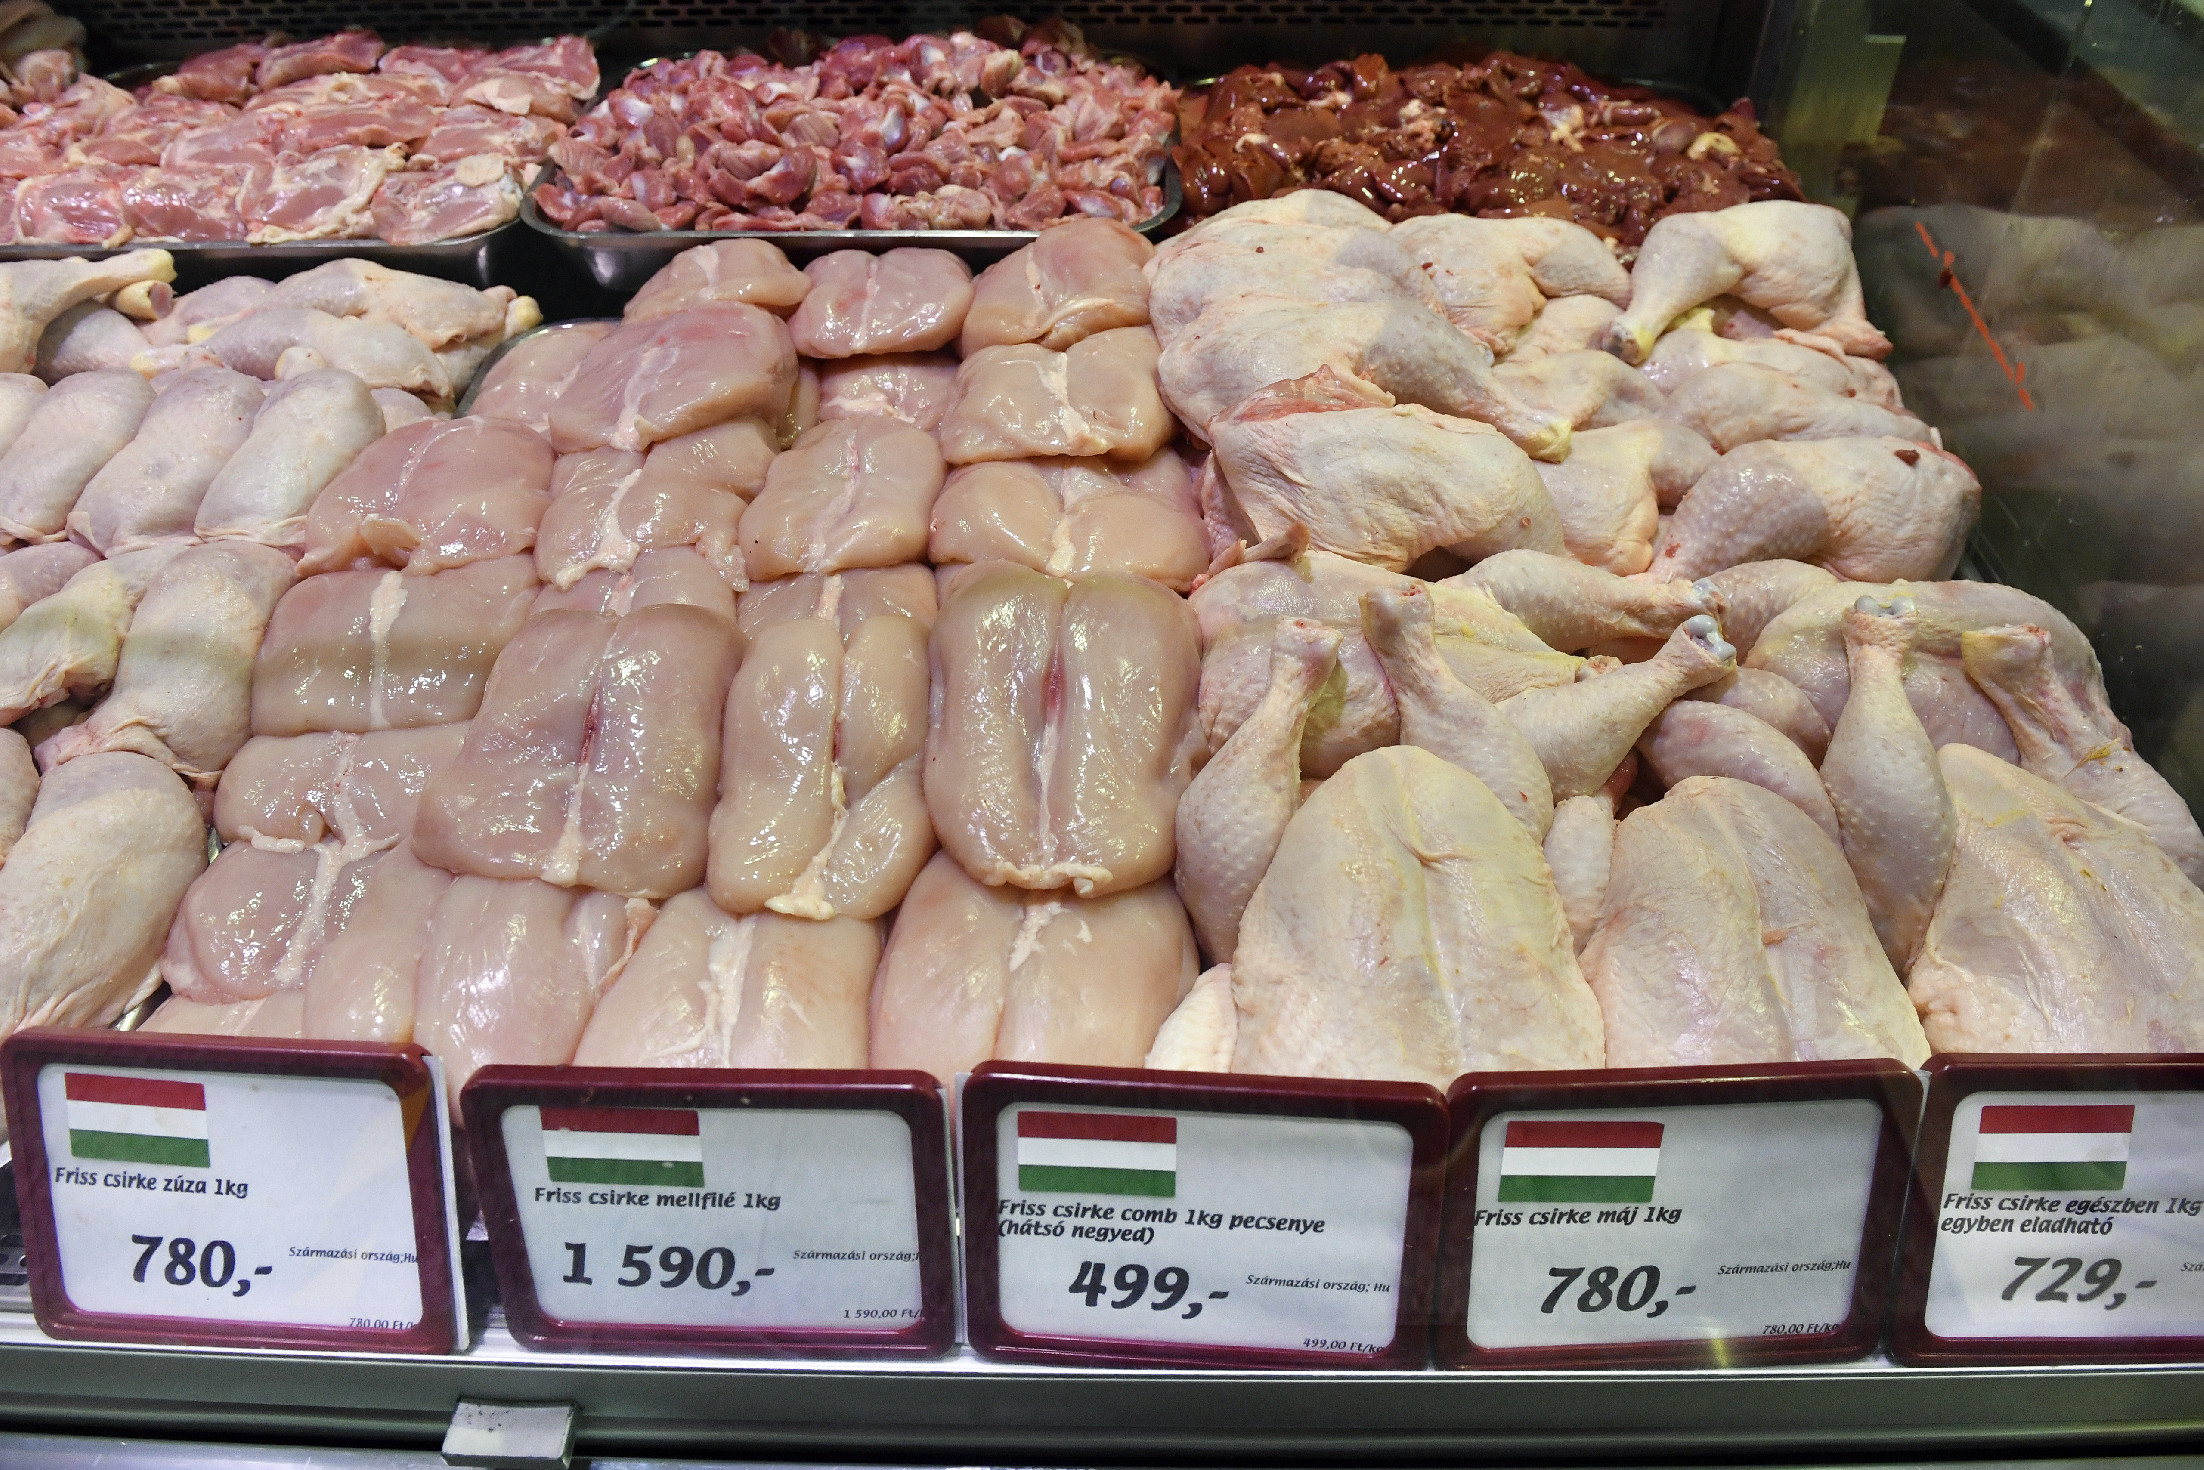 A csirkefarhát árát is rögzítik, ezt jelentette be Gulyás Gergely